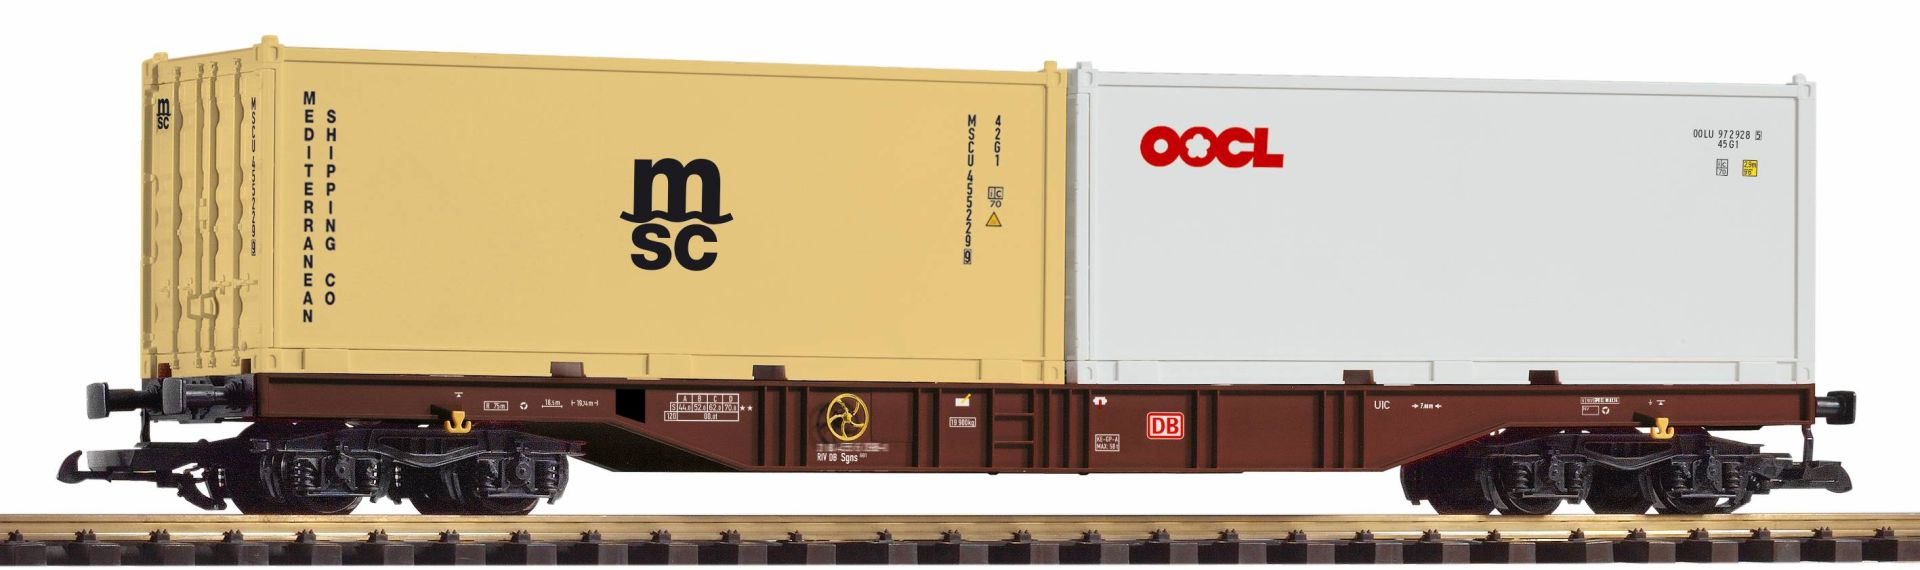 Piko 37754 - Containertragwagen, DBAG, Ep.VI 'msc, OOCL'